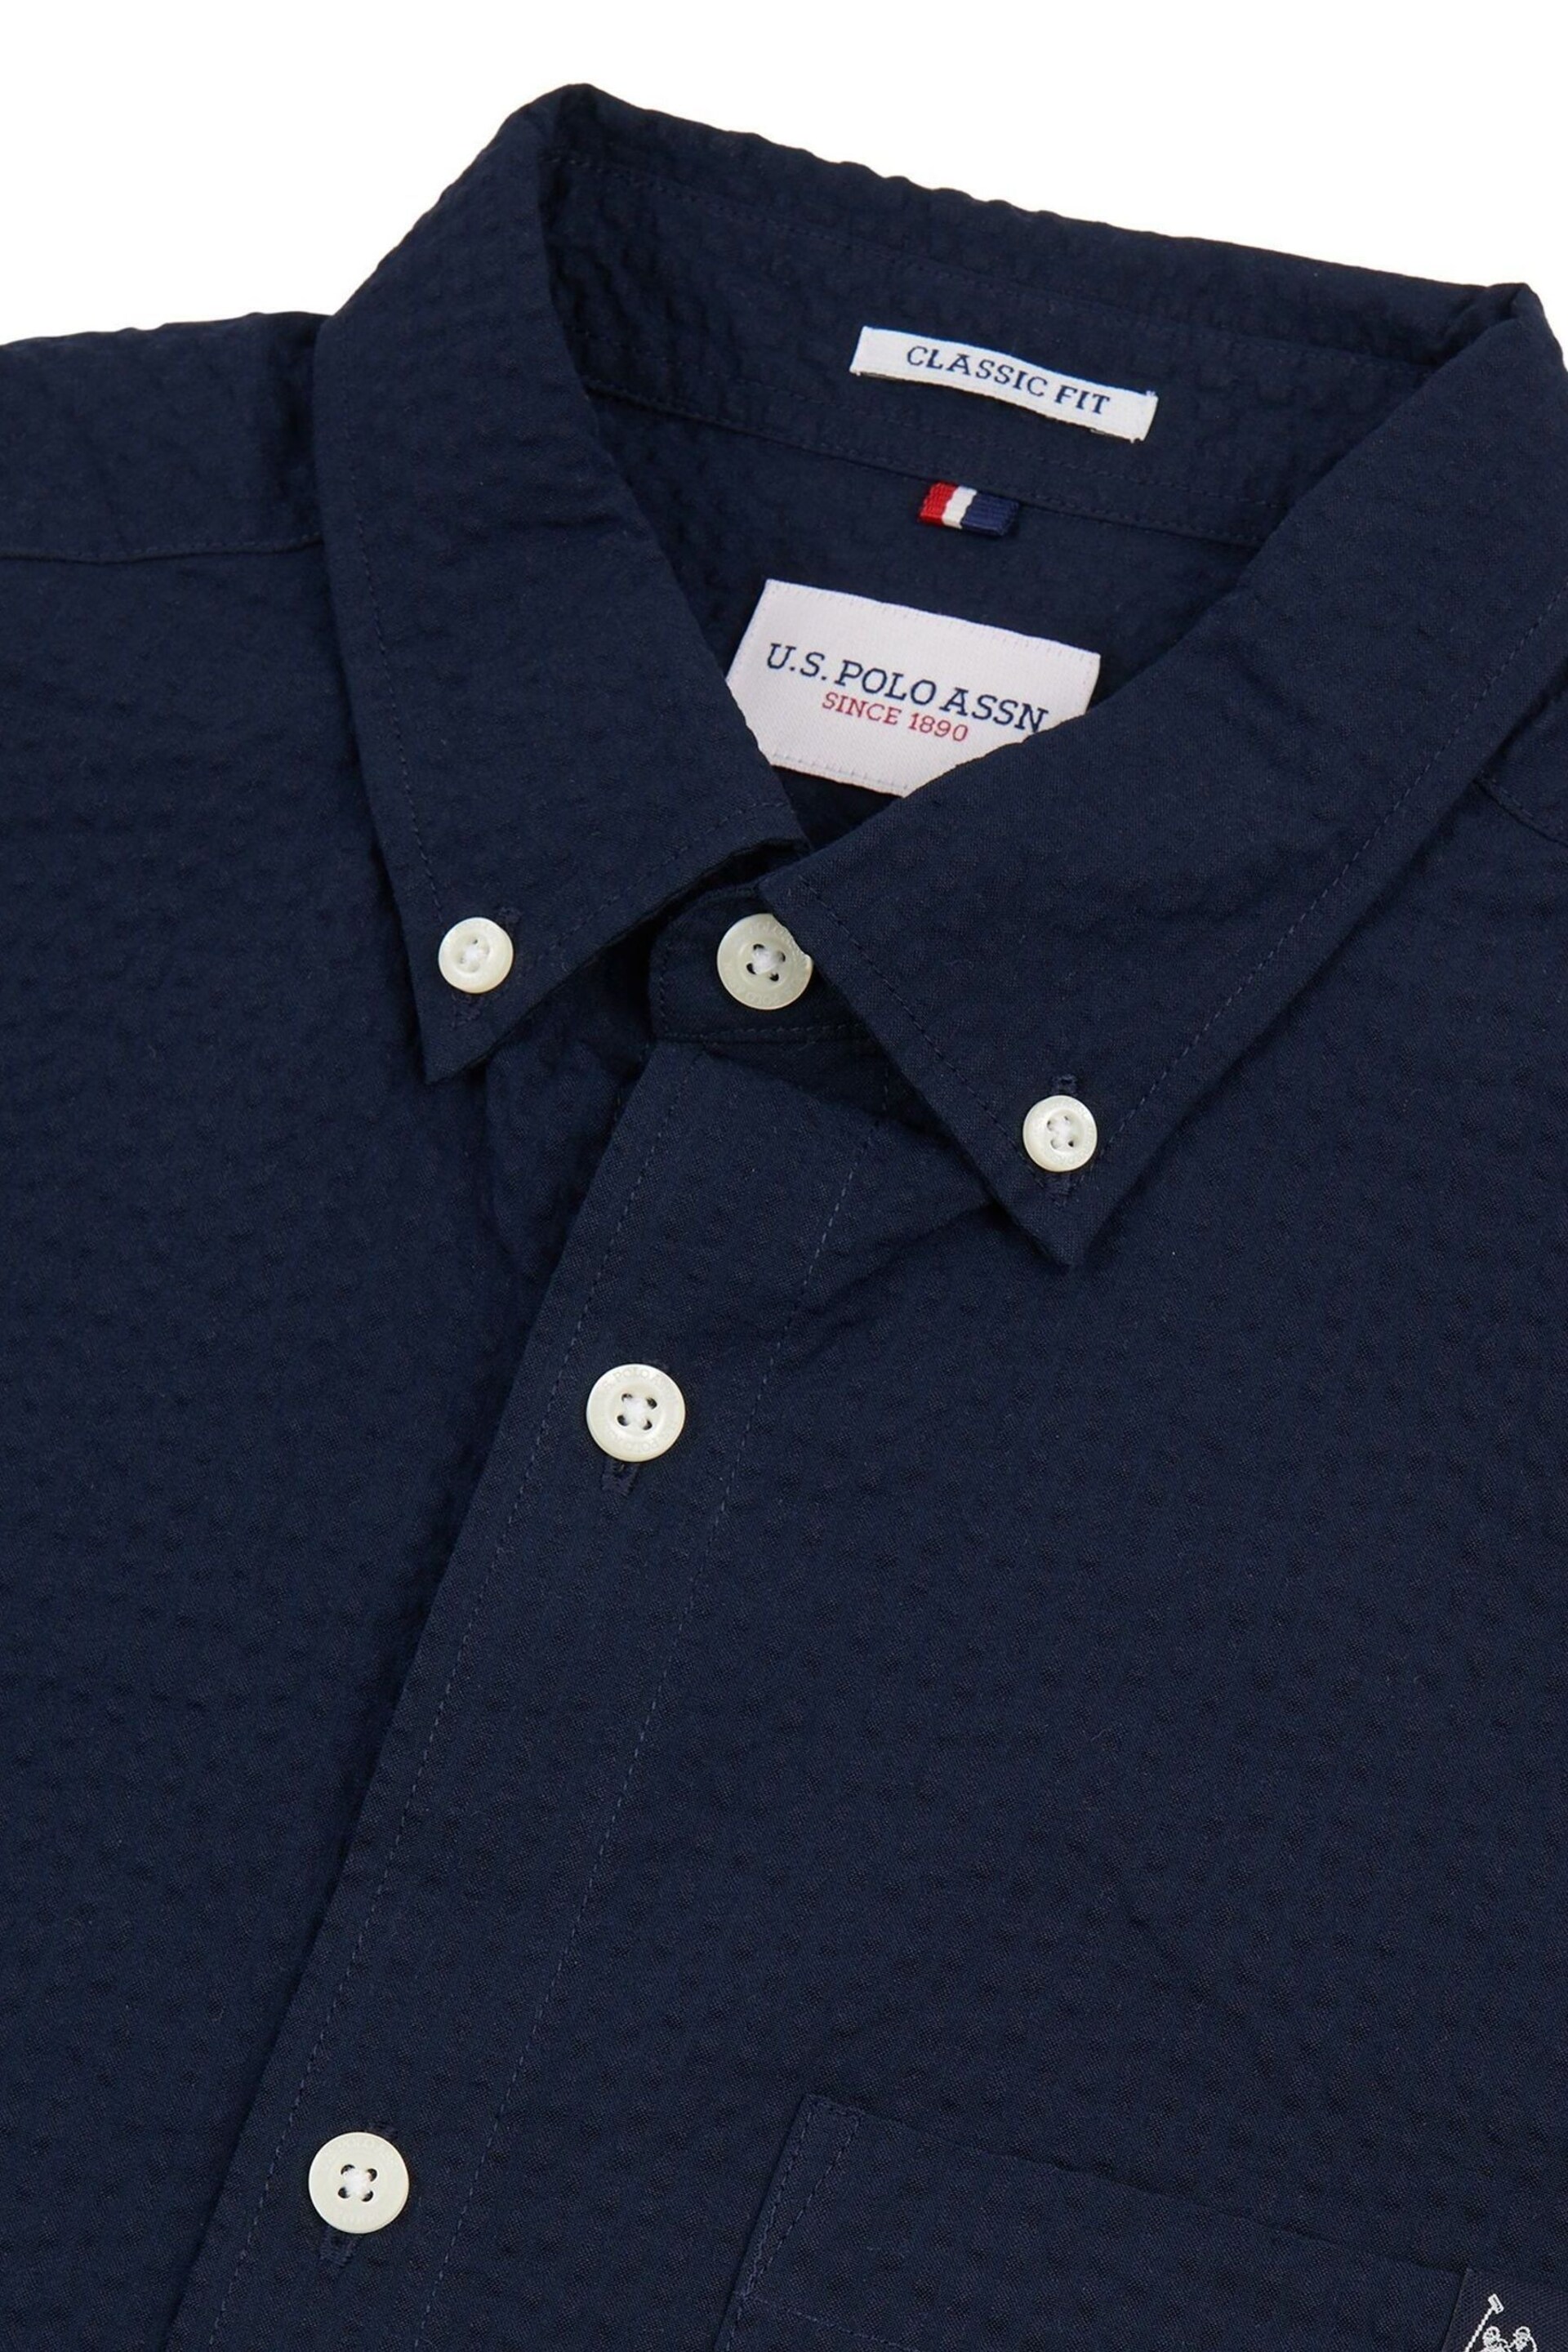 U.S. Polo Assn. Mens Seersucker Short Sleeve Shirt - Image 7 of 8